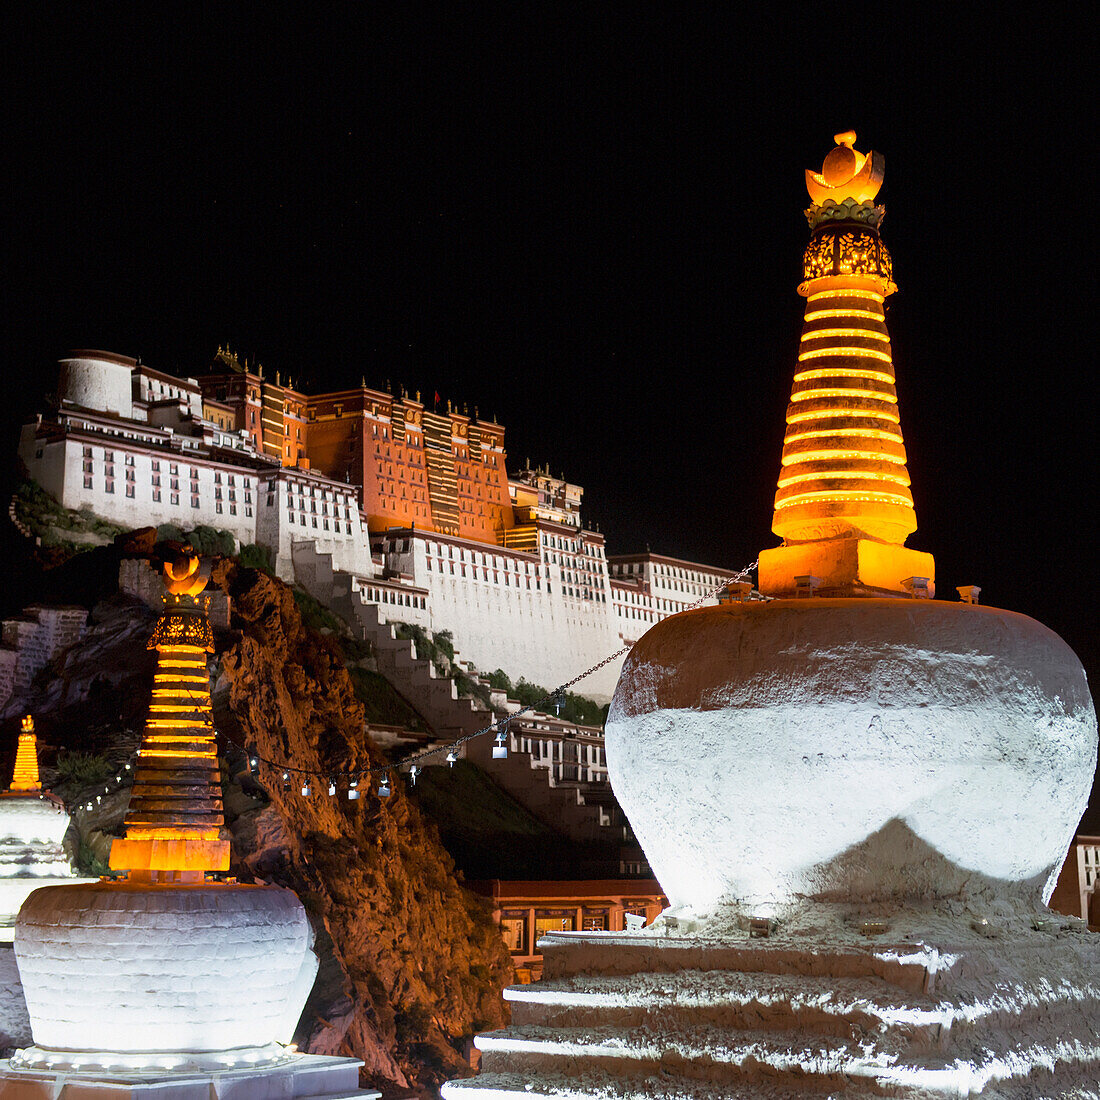 China, Xizang, Lhasa, Potala Palace at night